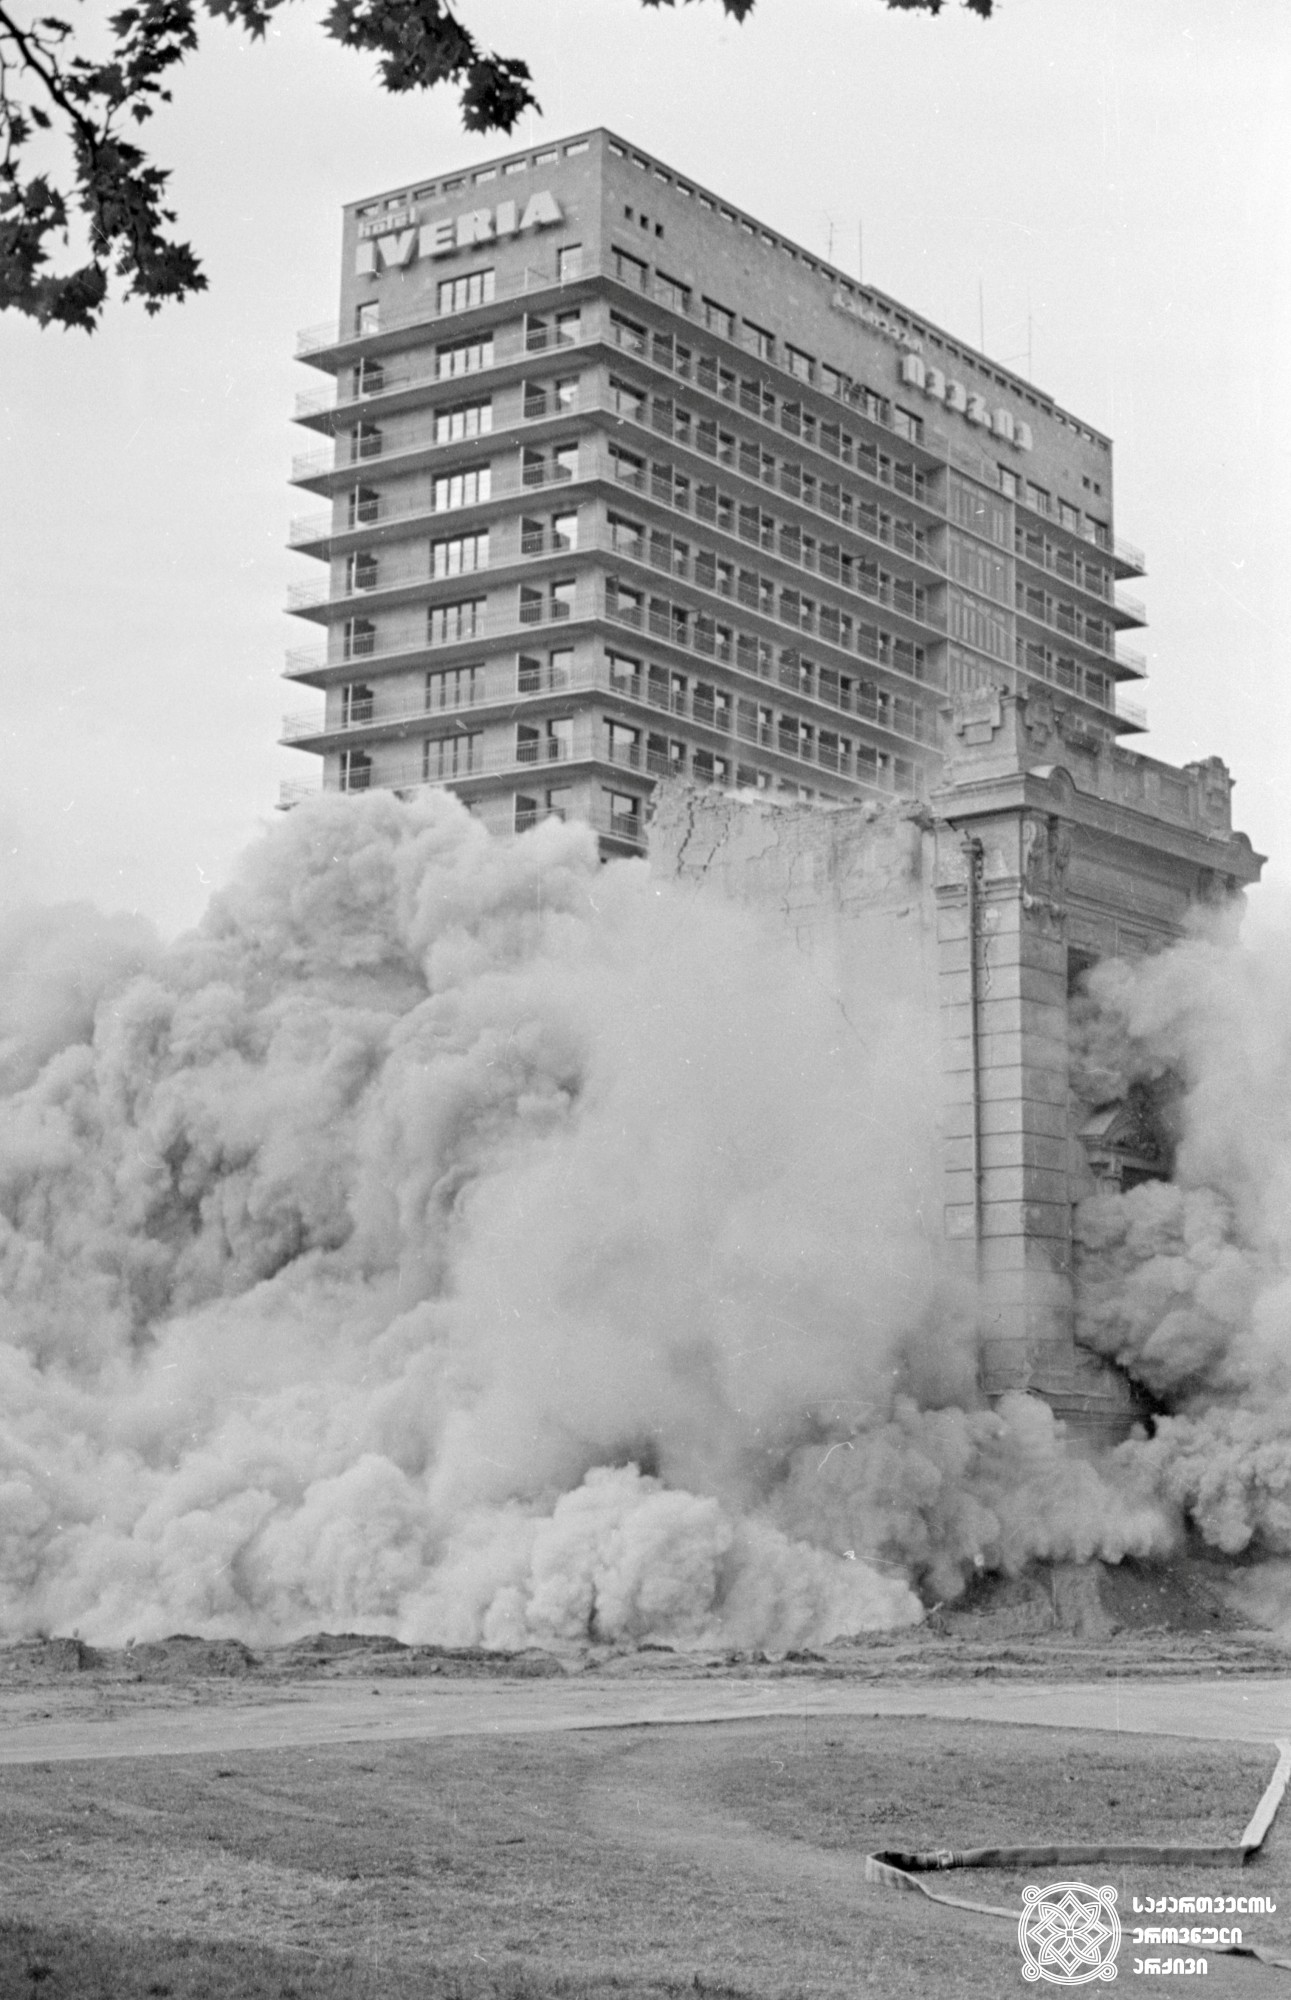 აფეთქება რუსთაველის გამზირზე, ტელეგრაფის ძველი შენობის დემონტაჟი თბილისი.  <br> საქინფორმის ფოტოქრონიკა. ფოტო: სერგო ედიშერაშვილი. <br> 1979. <br>
Explosion on Rustaveli Avenue, dismantling of old building of telegraph. Tbilisi. <br> Sakinformi's Photography Division. Photo by Sergo Edisherashvili. <br>1979.